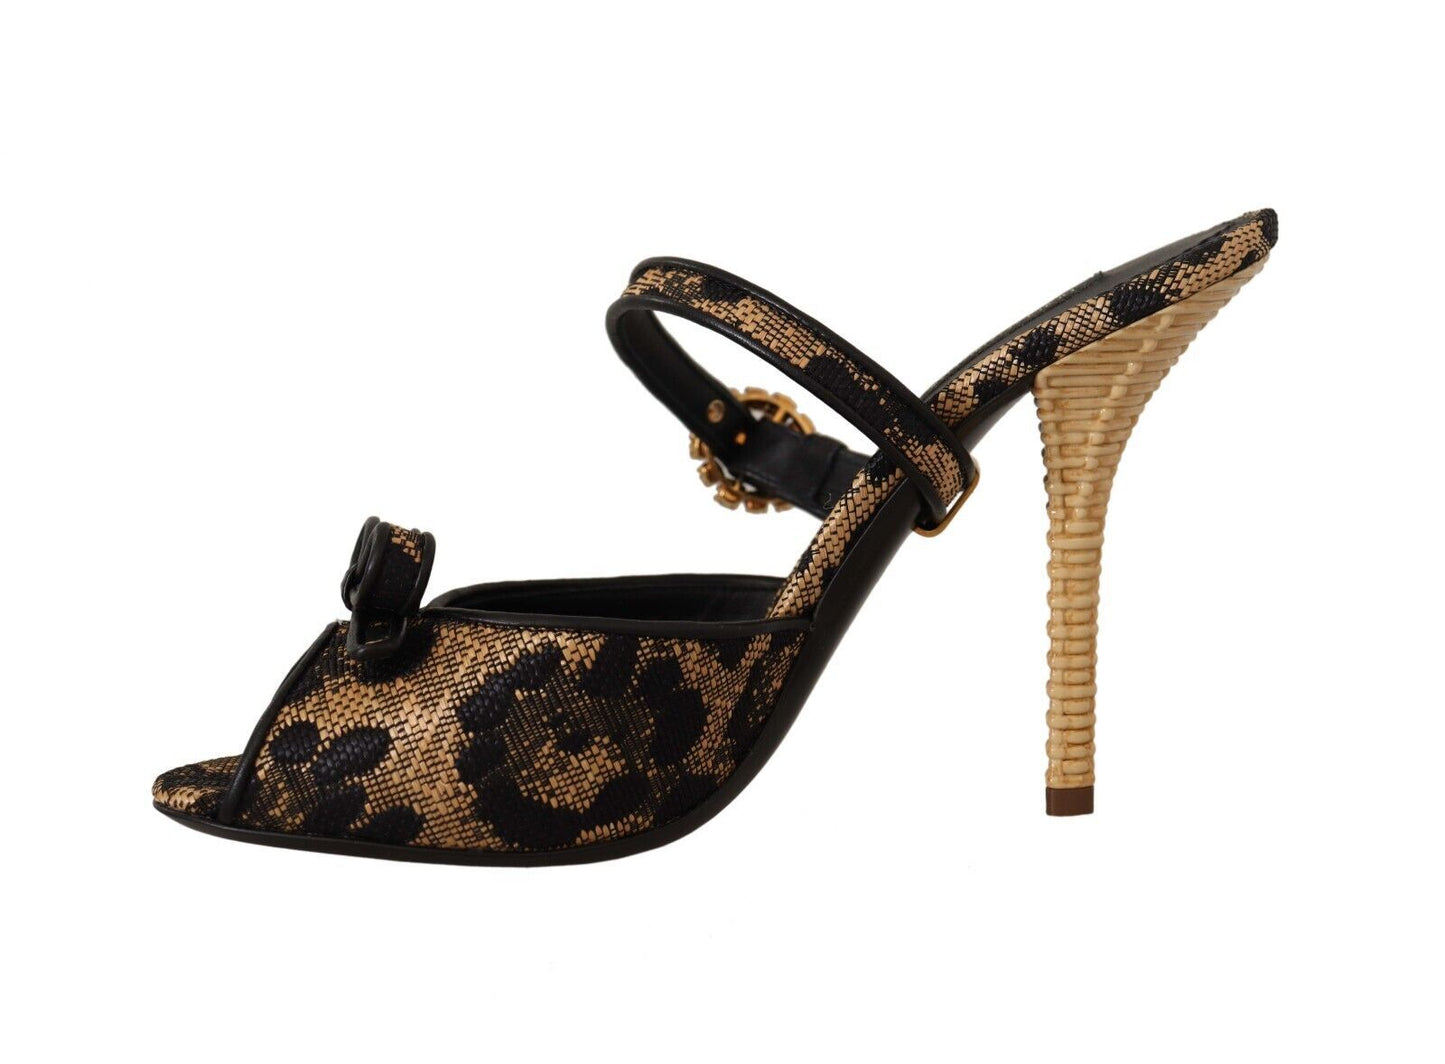 Crystal-Embellished Leopard Print Heels